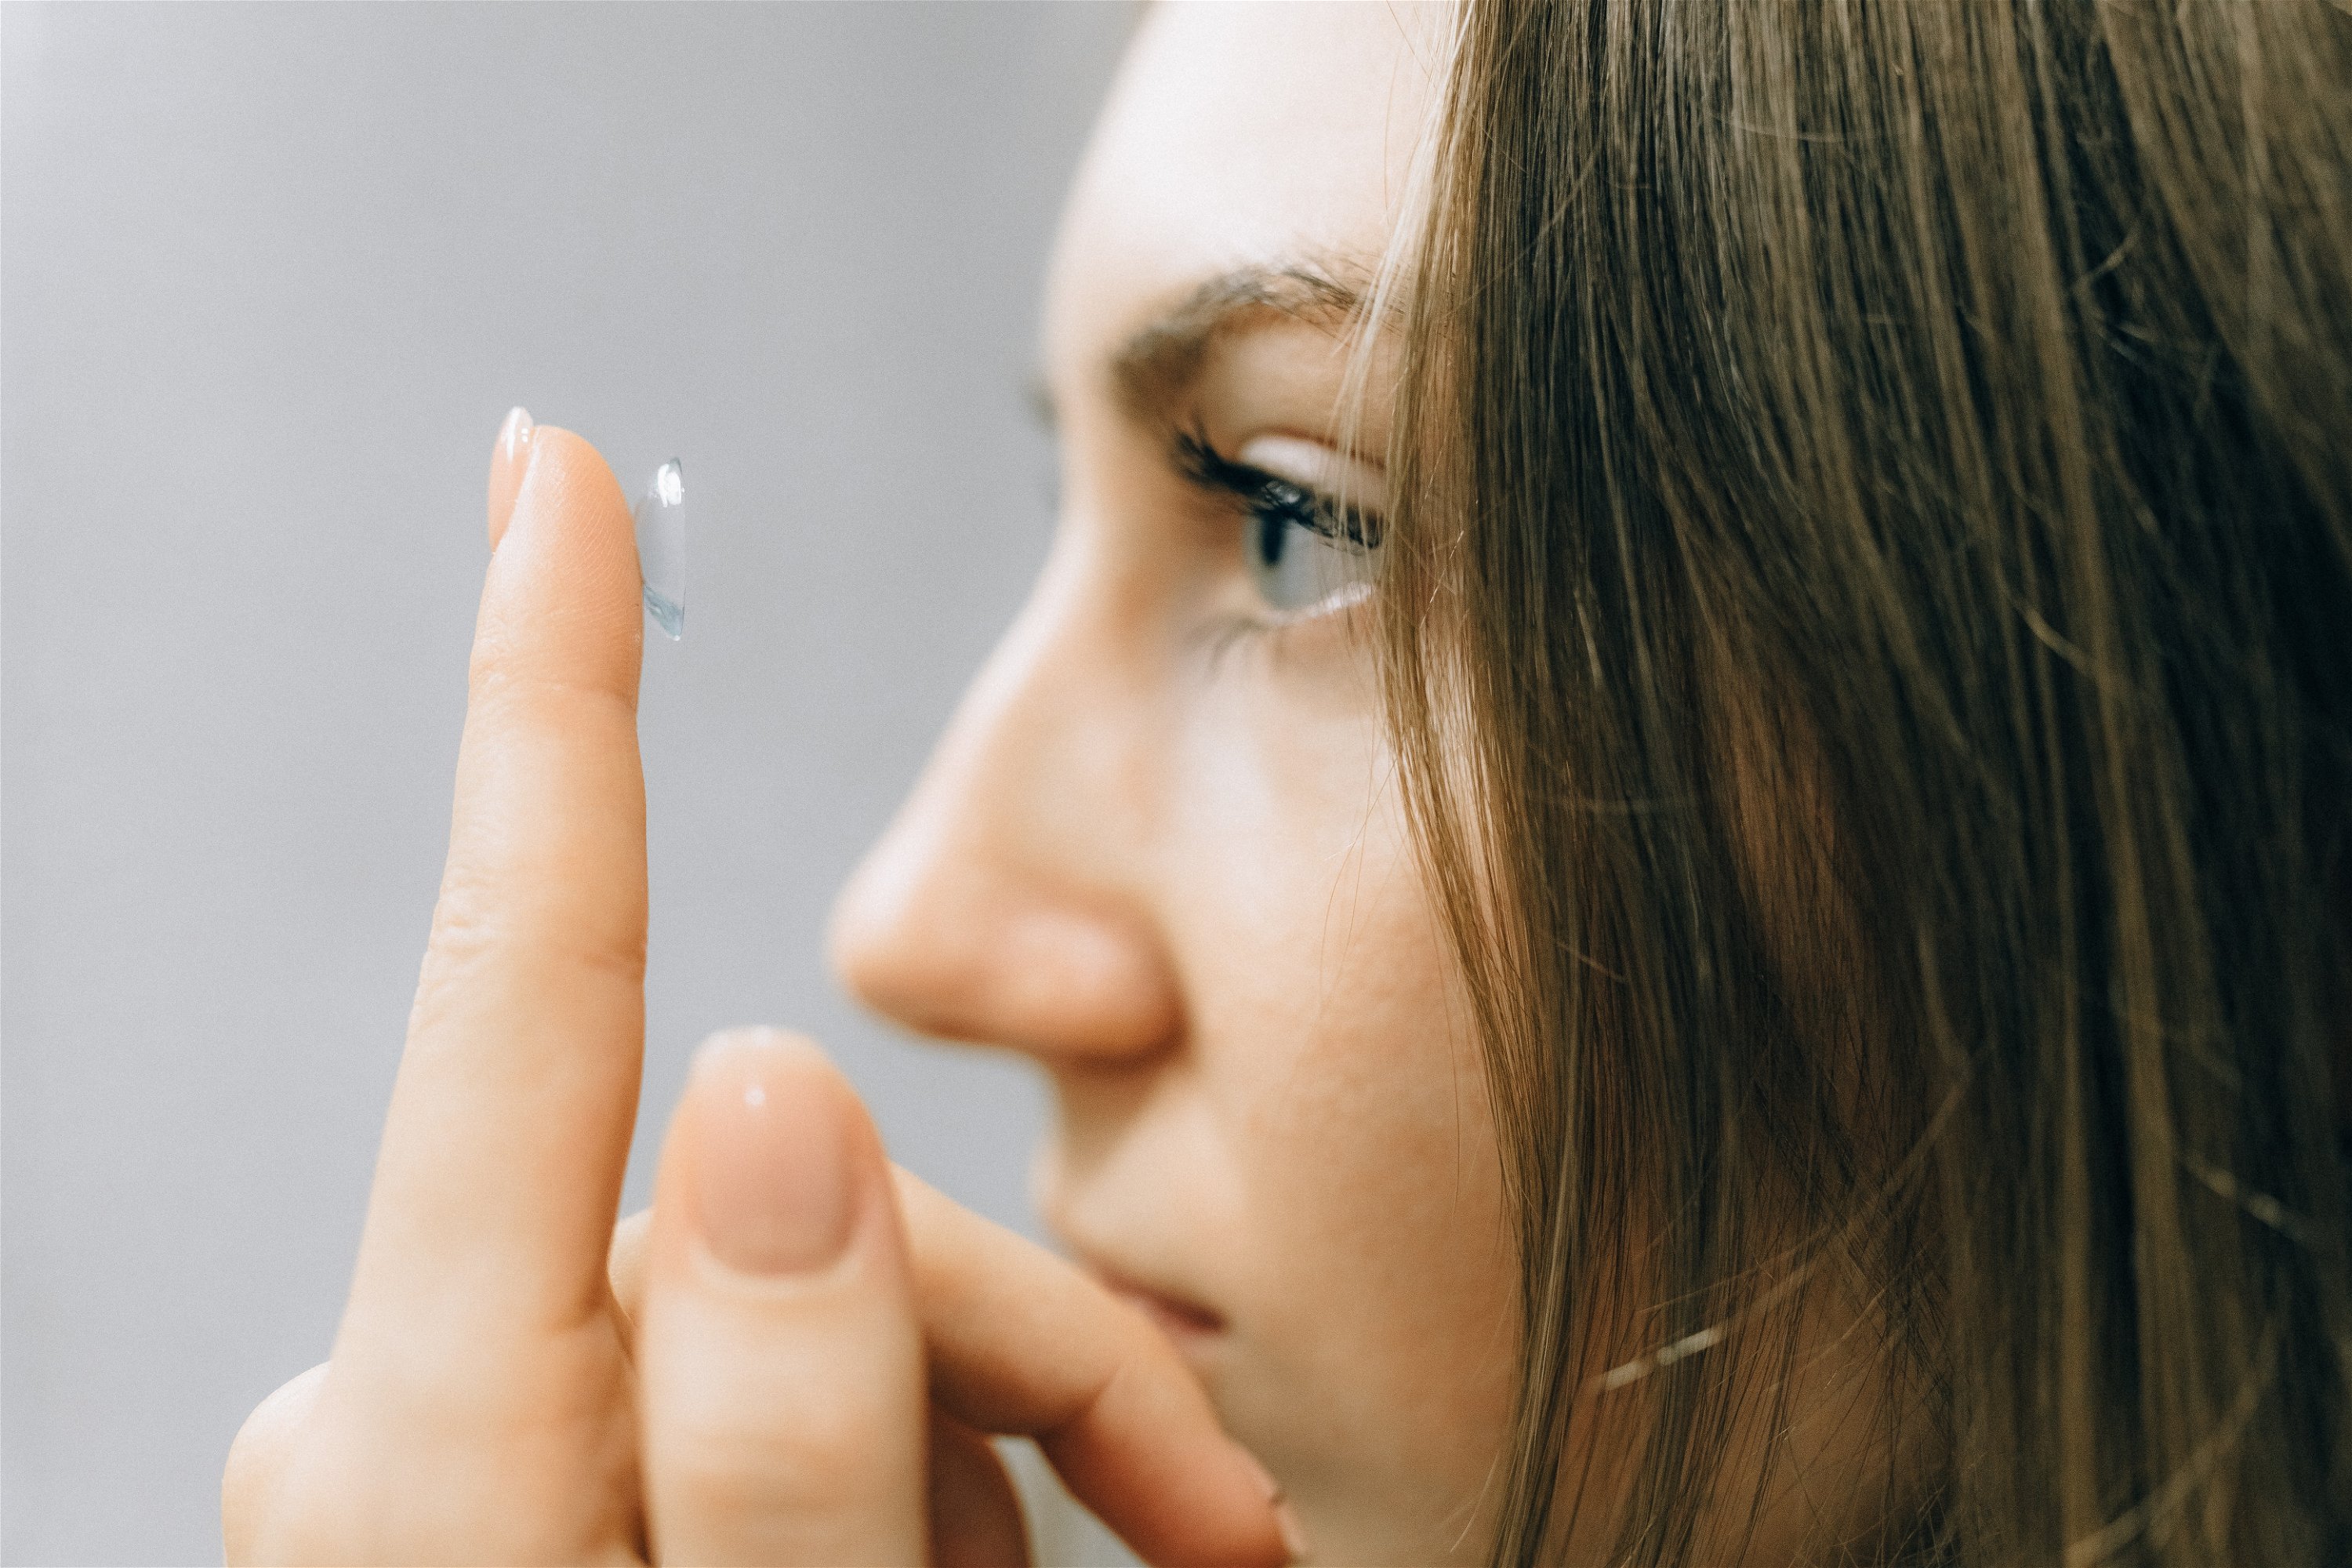 Kontaktlinsen einsetzen - Tipps zum Umgang mit Kontaktlinsen